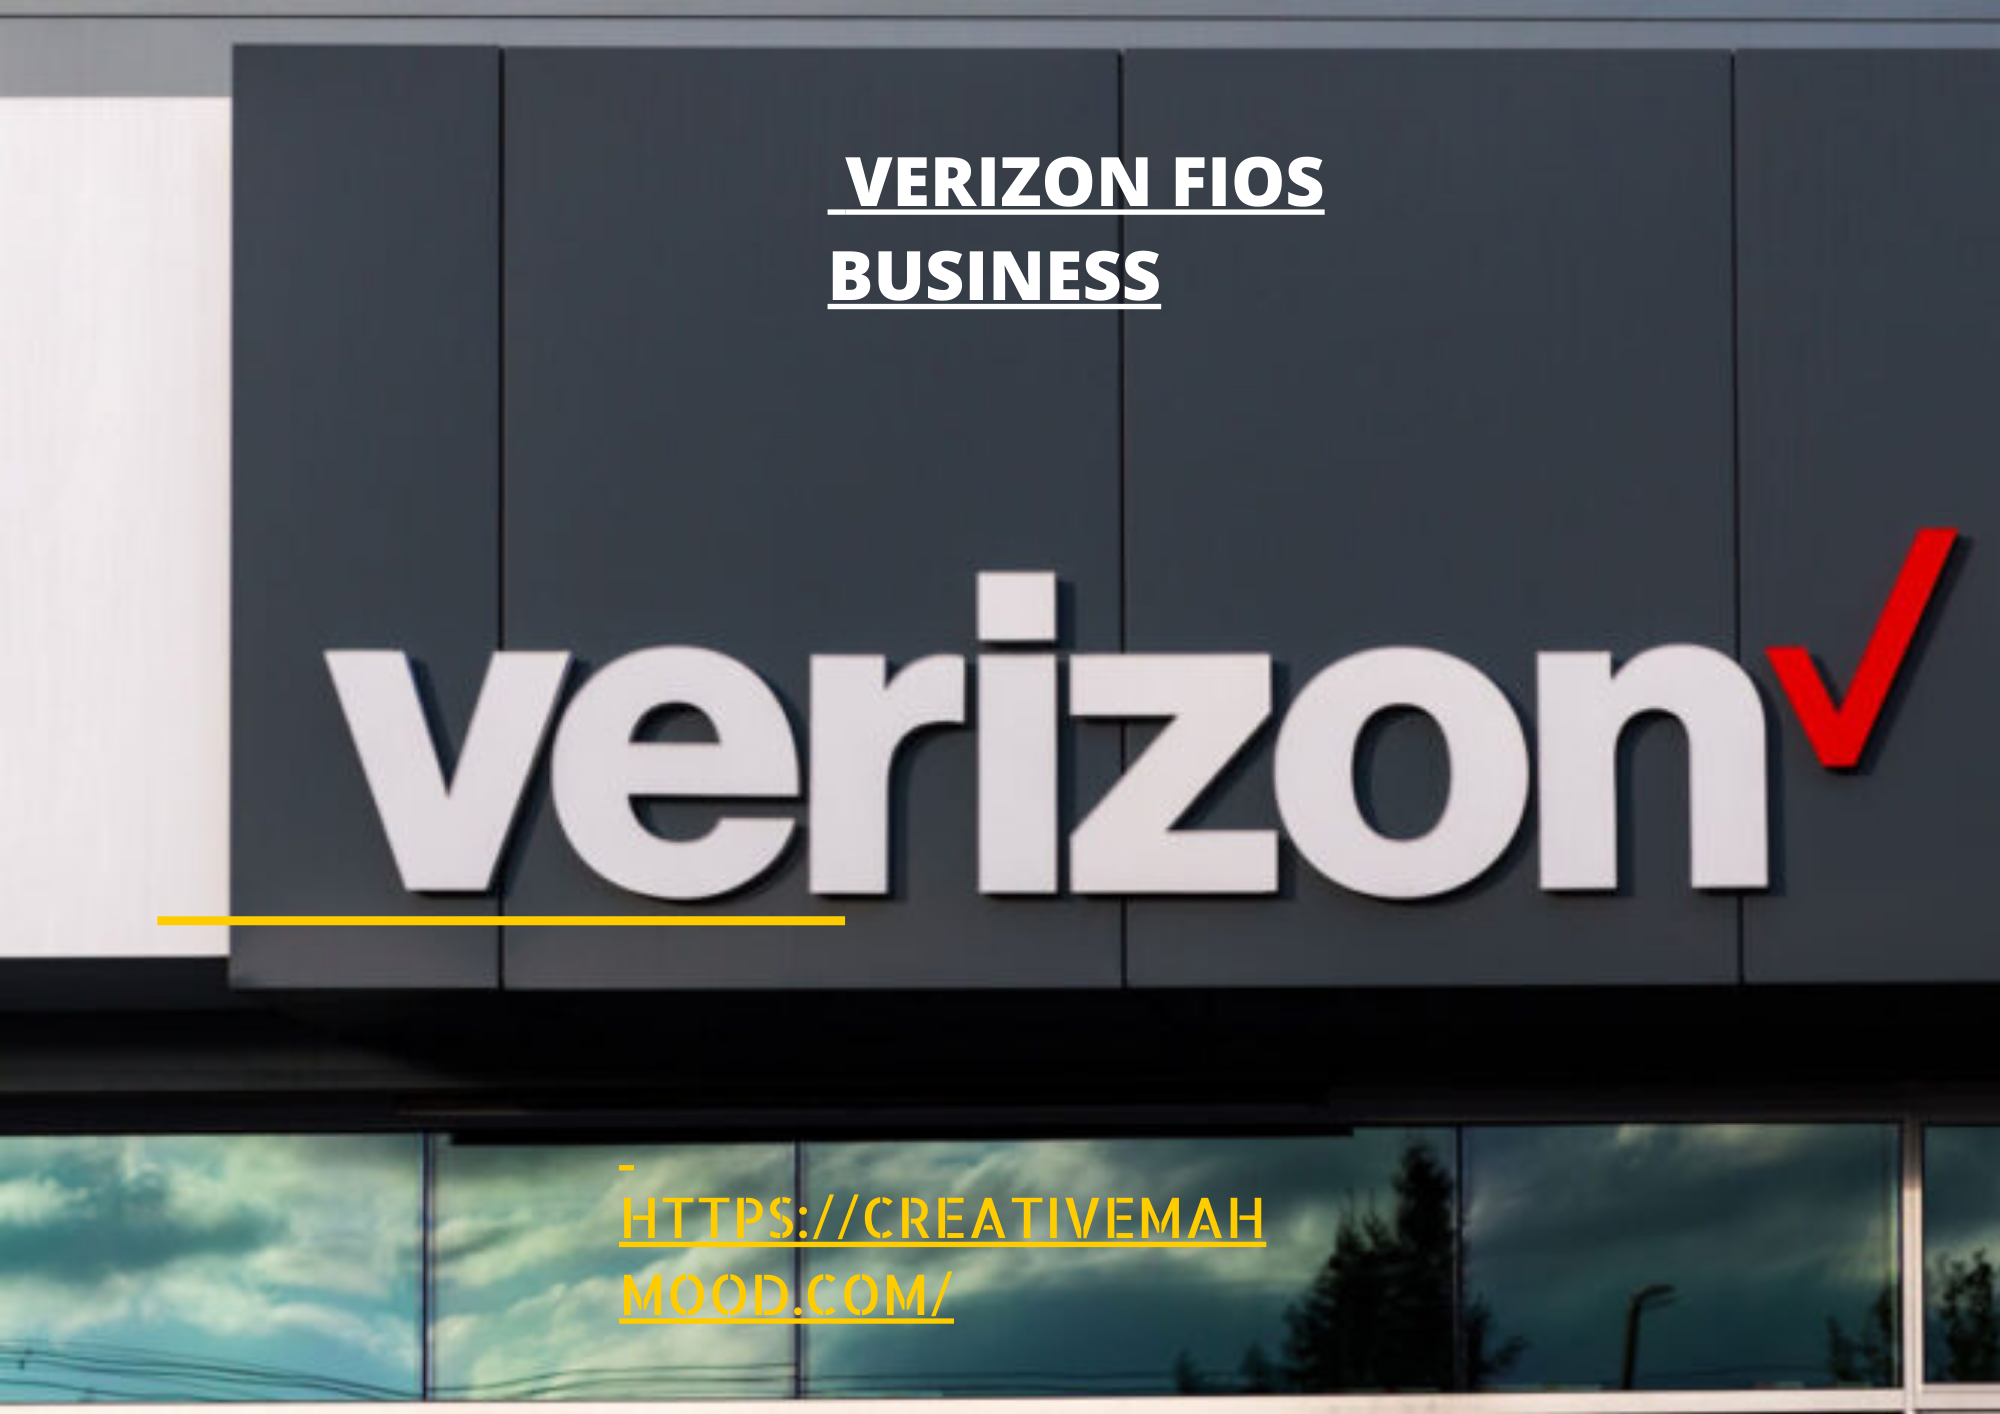 Verizon Fios business